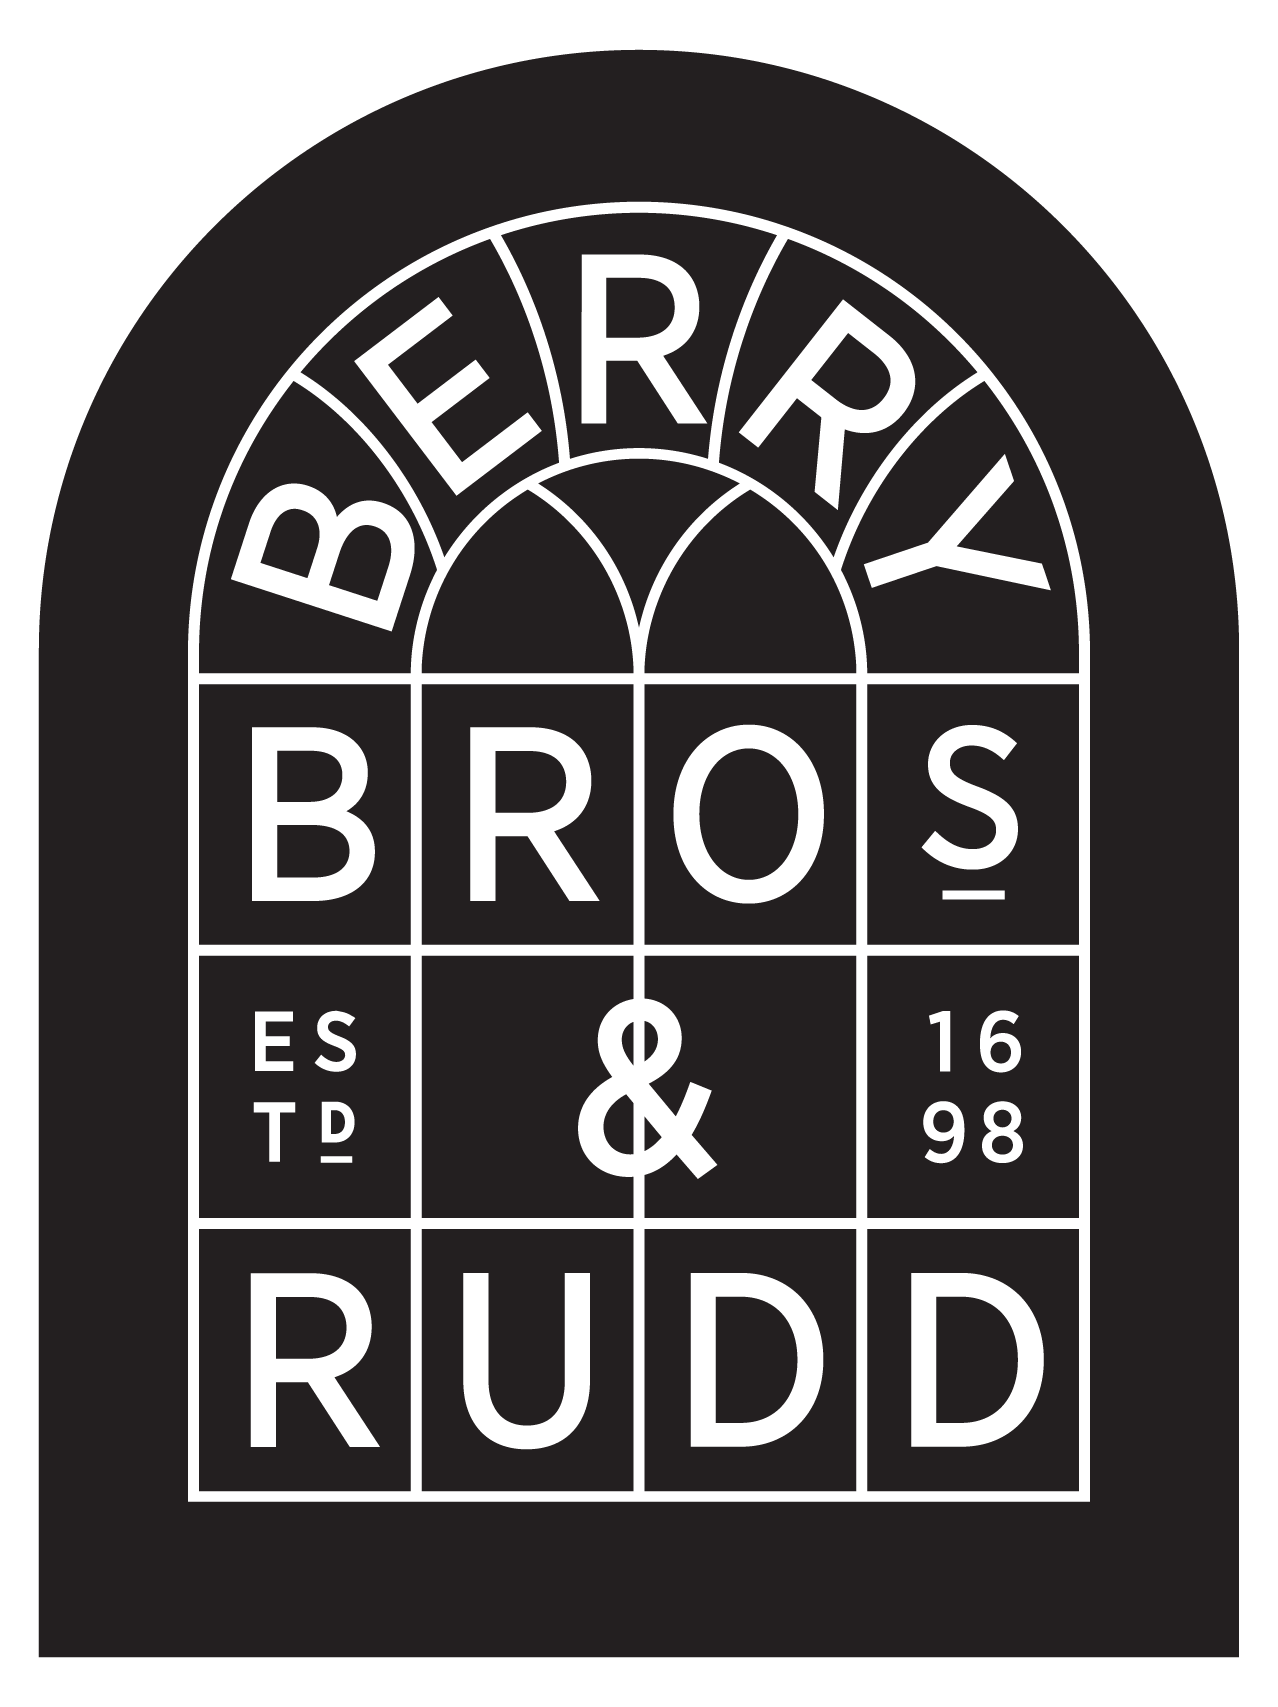 Berry Bros